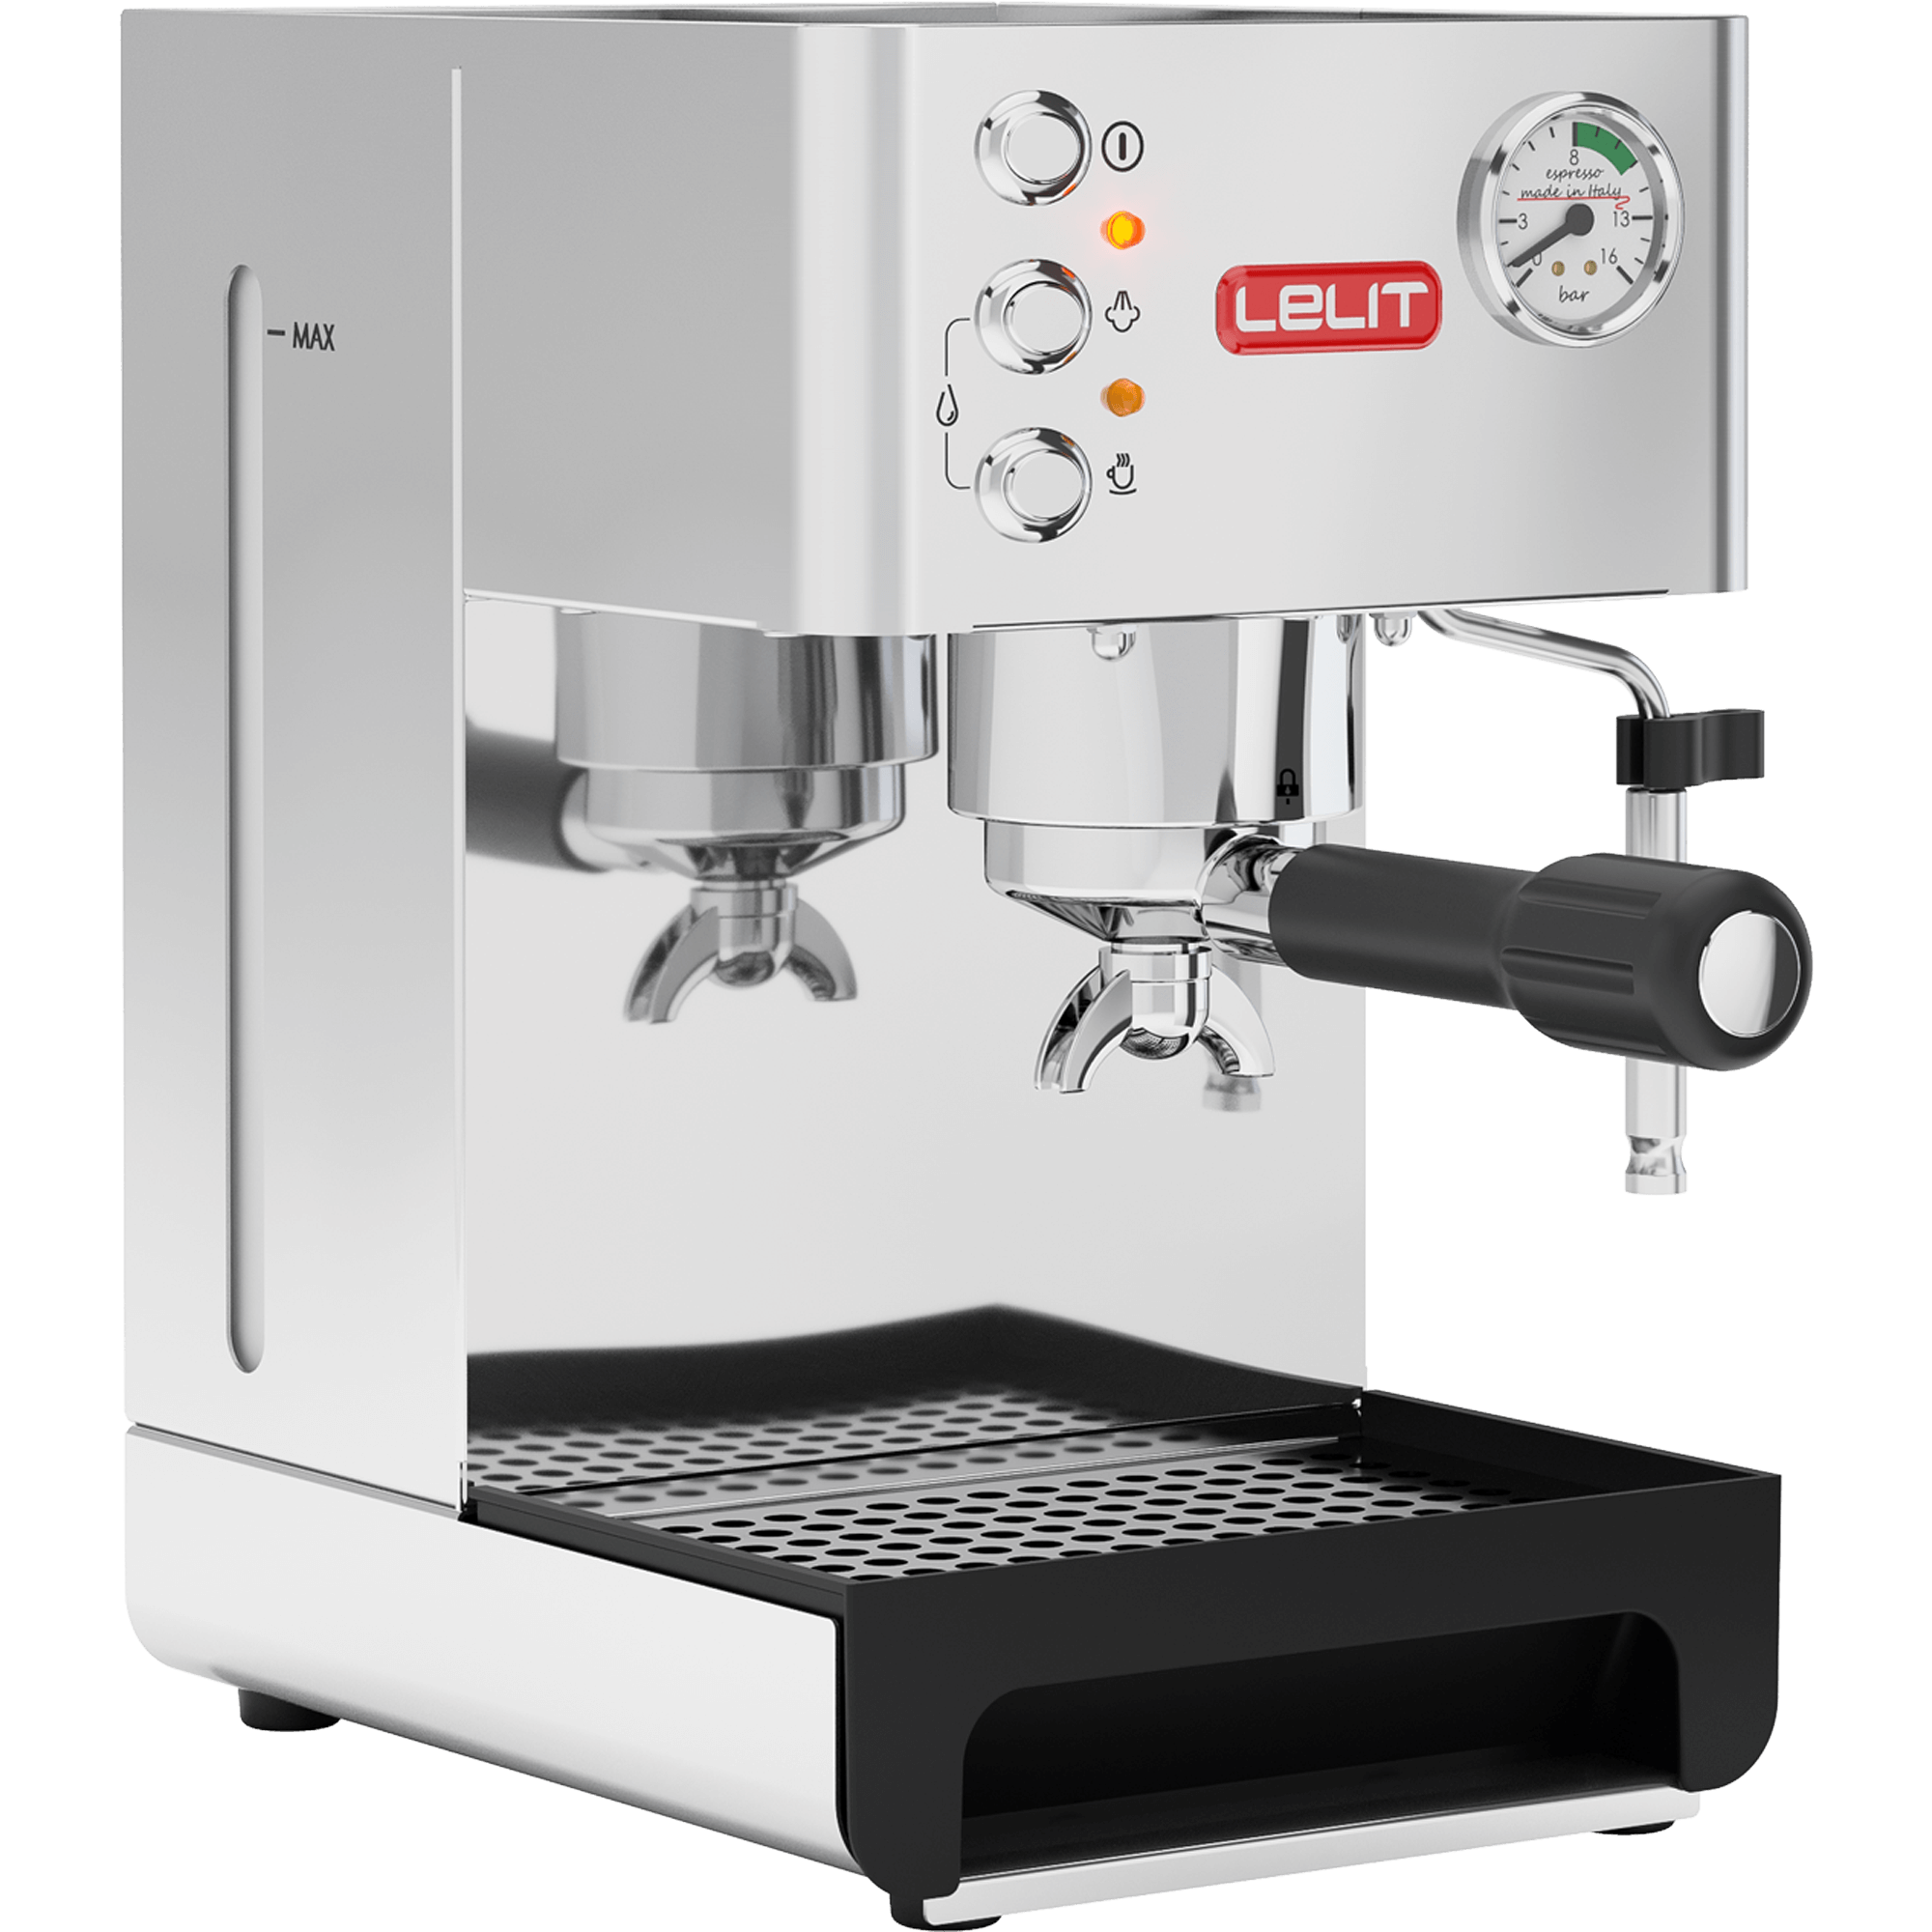 ideal für Espresso-Bezug 2 liters Lelit Anna PL41LEM semi-professionelle Kaffeemaschine Cappuccino und Kaffee-Pads-Edelstahl-Gehäuse silber & Graef Kaffeemühle CM 800 Stainless Steel